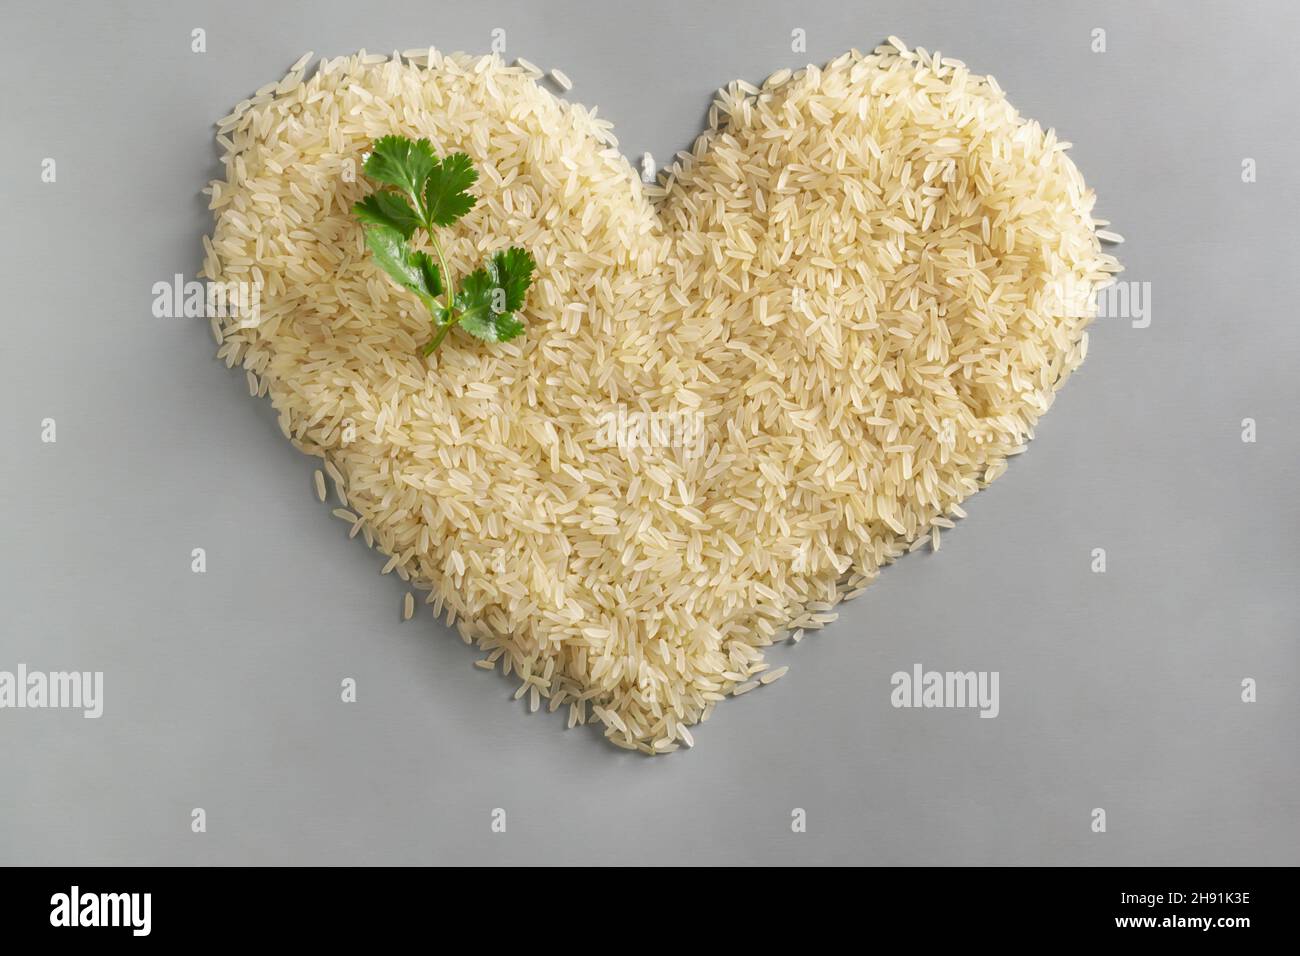 Le riz blanc à grain long est disposé en forme de coeur avec une branche verte de coriandre.Concept d'alimentation saine.Les plats de riz sont cuits dans tous les pays Banque D'Images